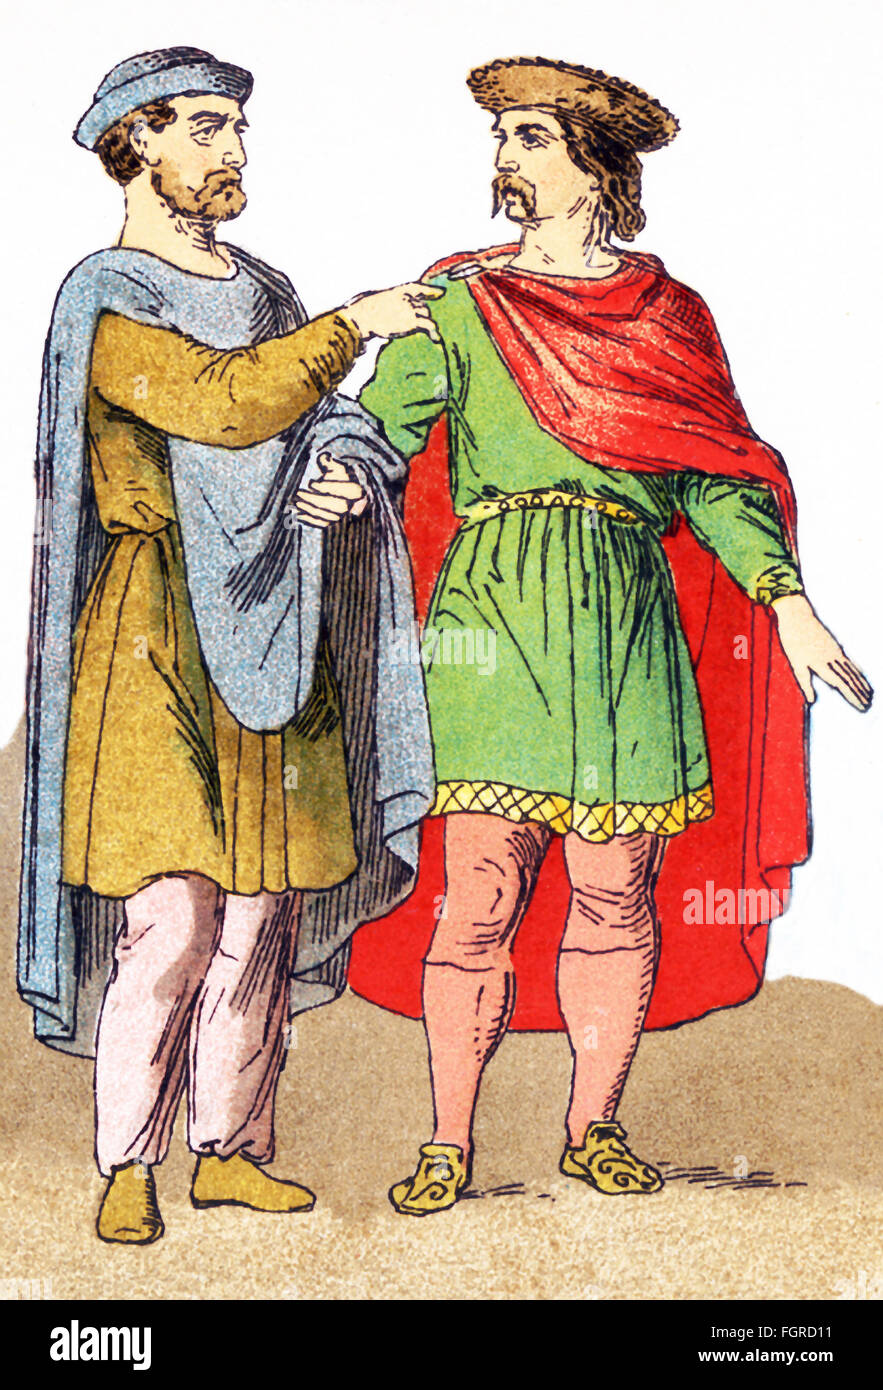 Le figure qui illustrato sono due cittadini Frankish titolari di qualche grado. Franchi erano membri della nazione germanica o coalizione che ha conquistato la Gallia (l attuale Francia) nel sesto secolo. Foto Stock